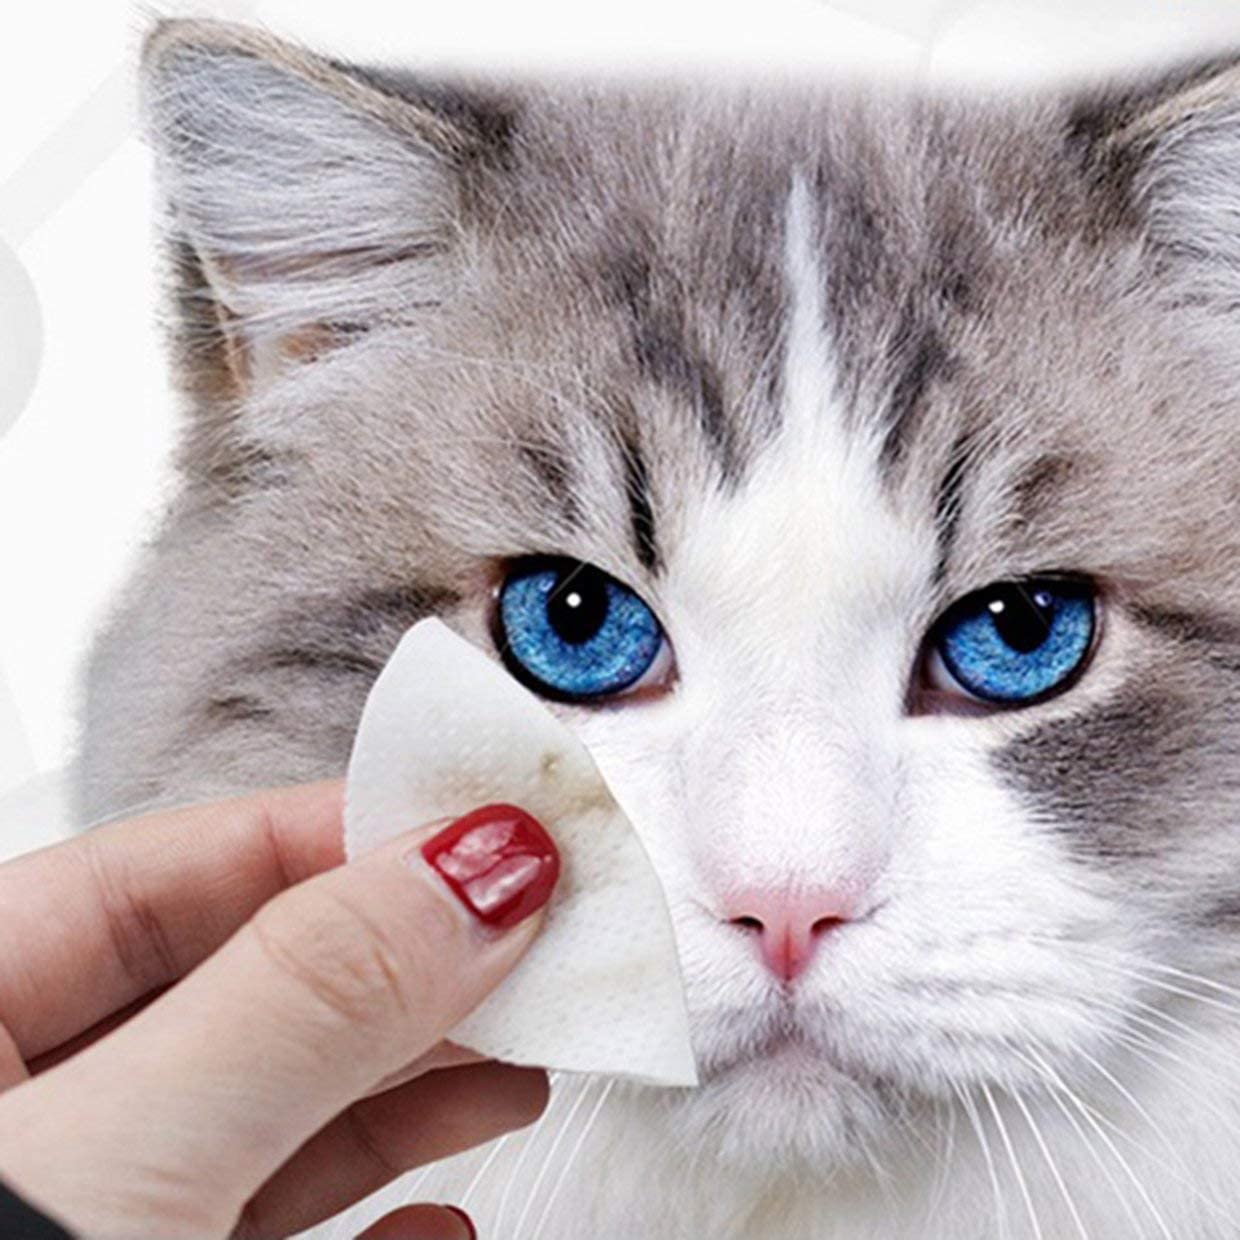  MXECO Toallitas para ojos para mascotas Perros y gatos Elimina de forma natural la suciedad Evita las lágrimas Irritaciones por manchas Infecciones Ingredientes Aloe Vera 100 Count 